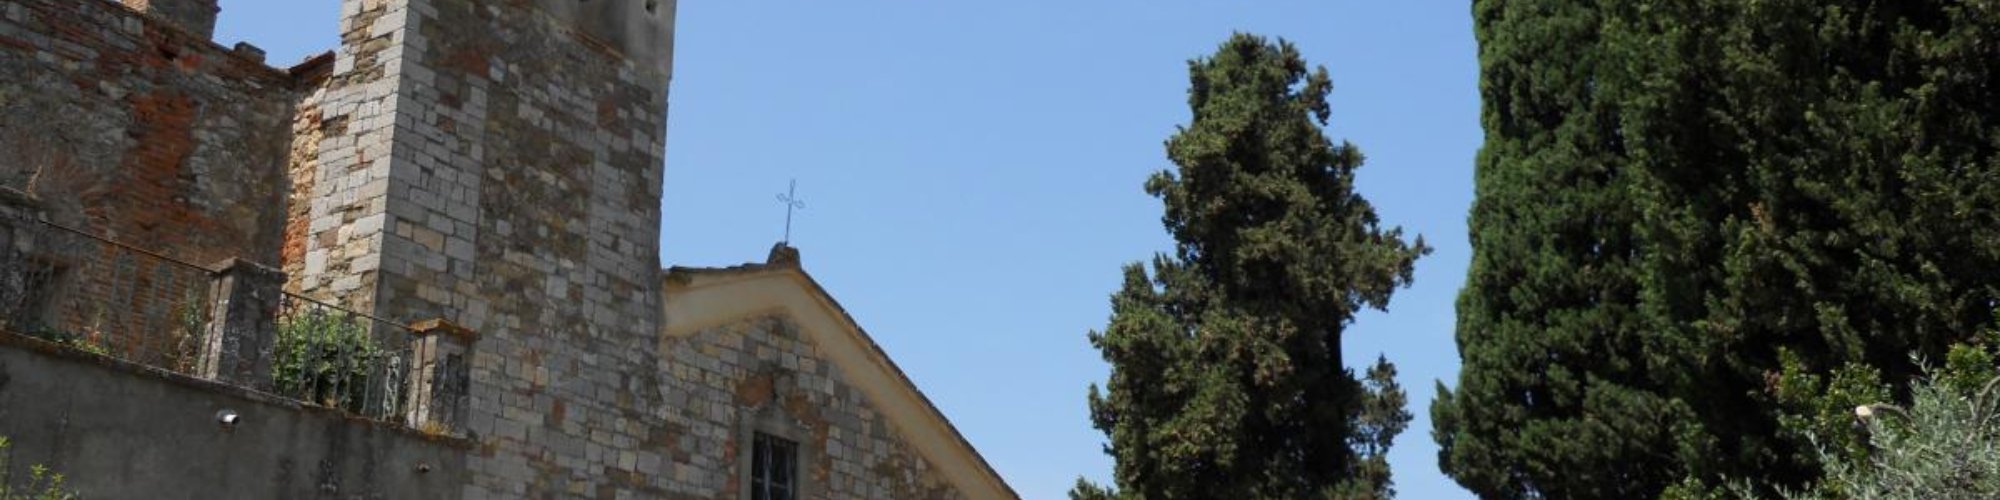 La Pieve di San Giovanni, Bucine